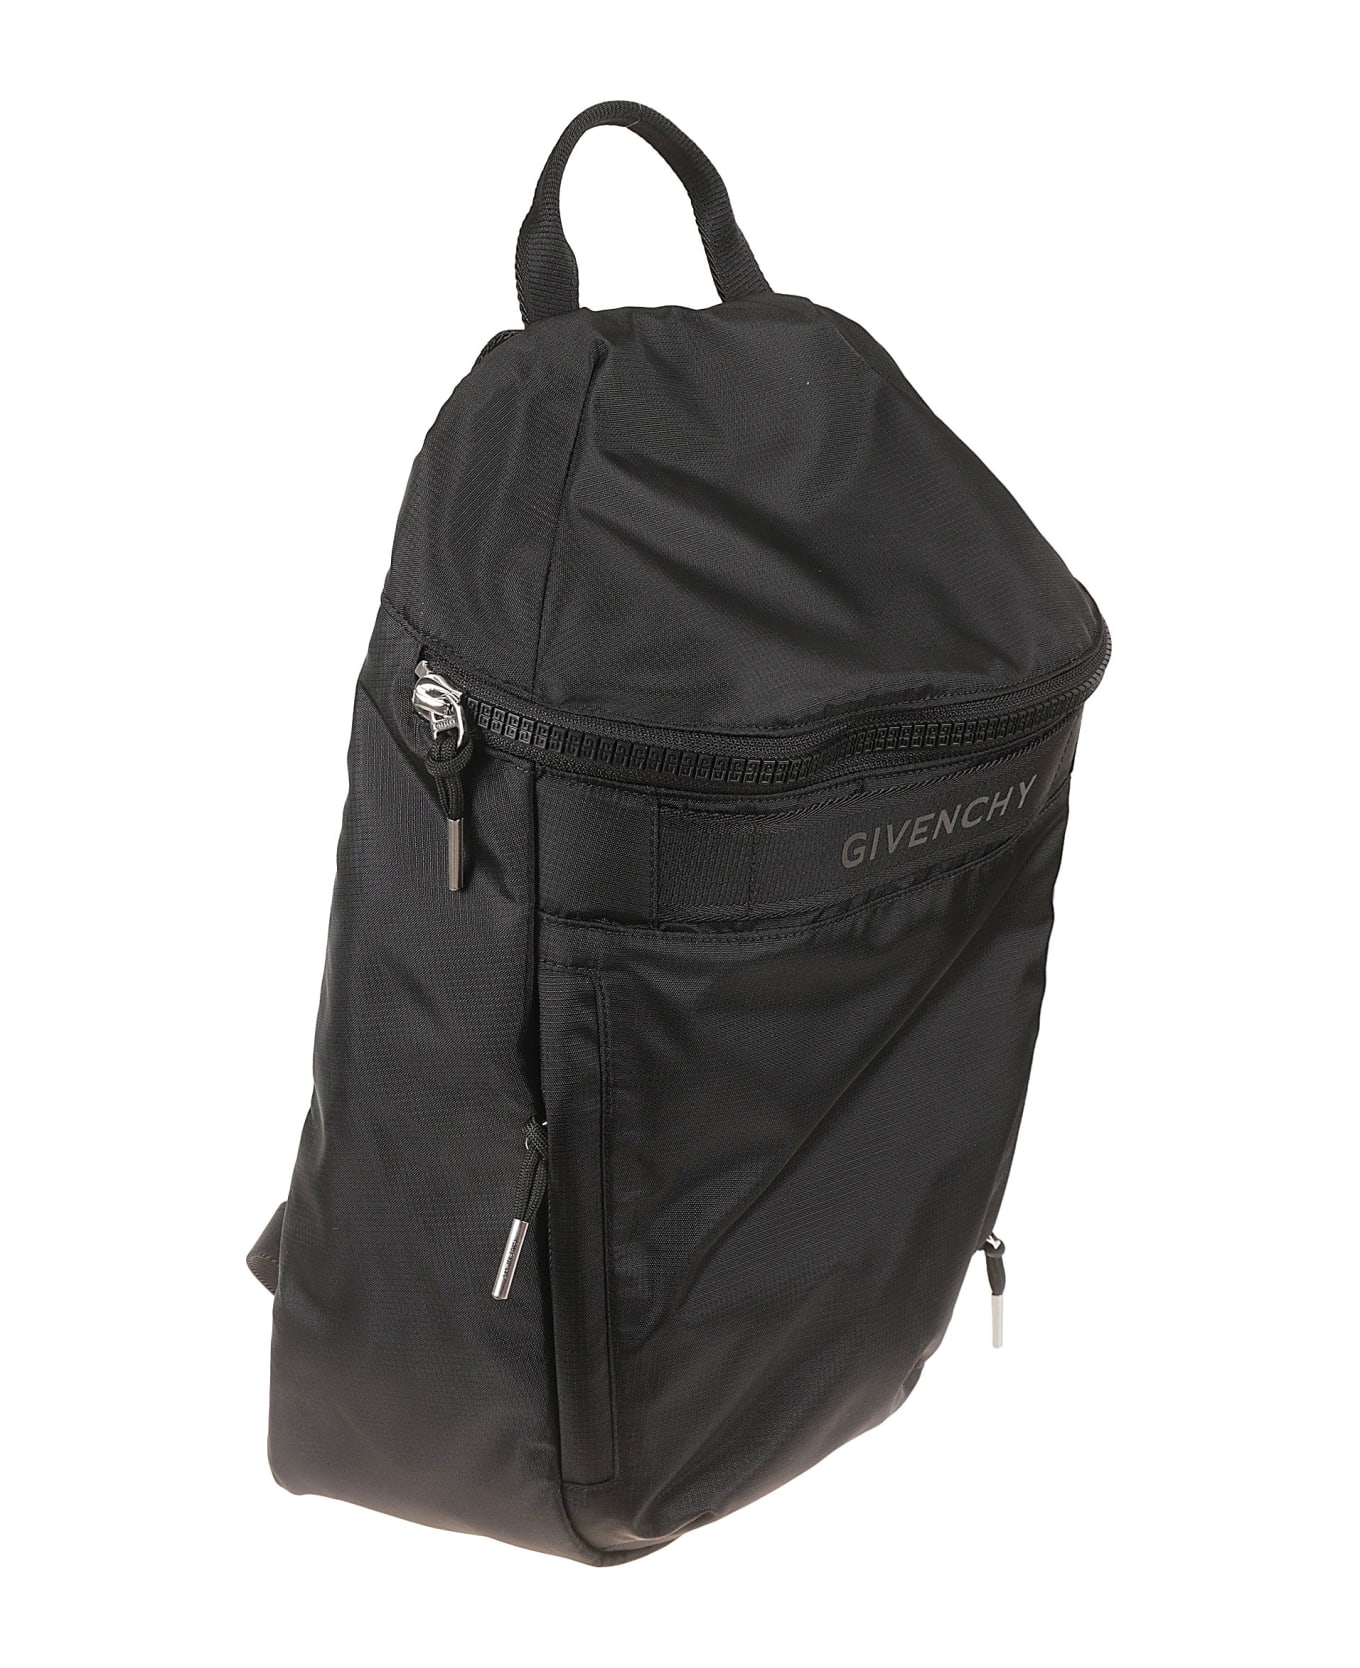 Givenchy G-light Backpack - Black